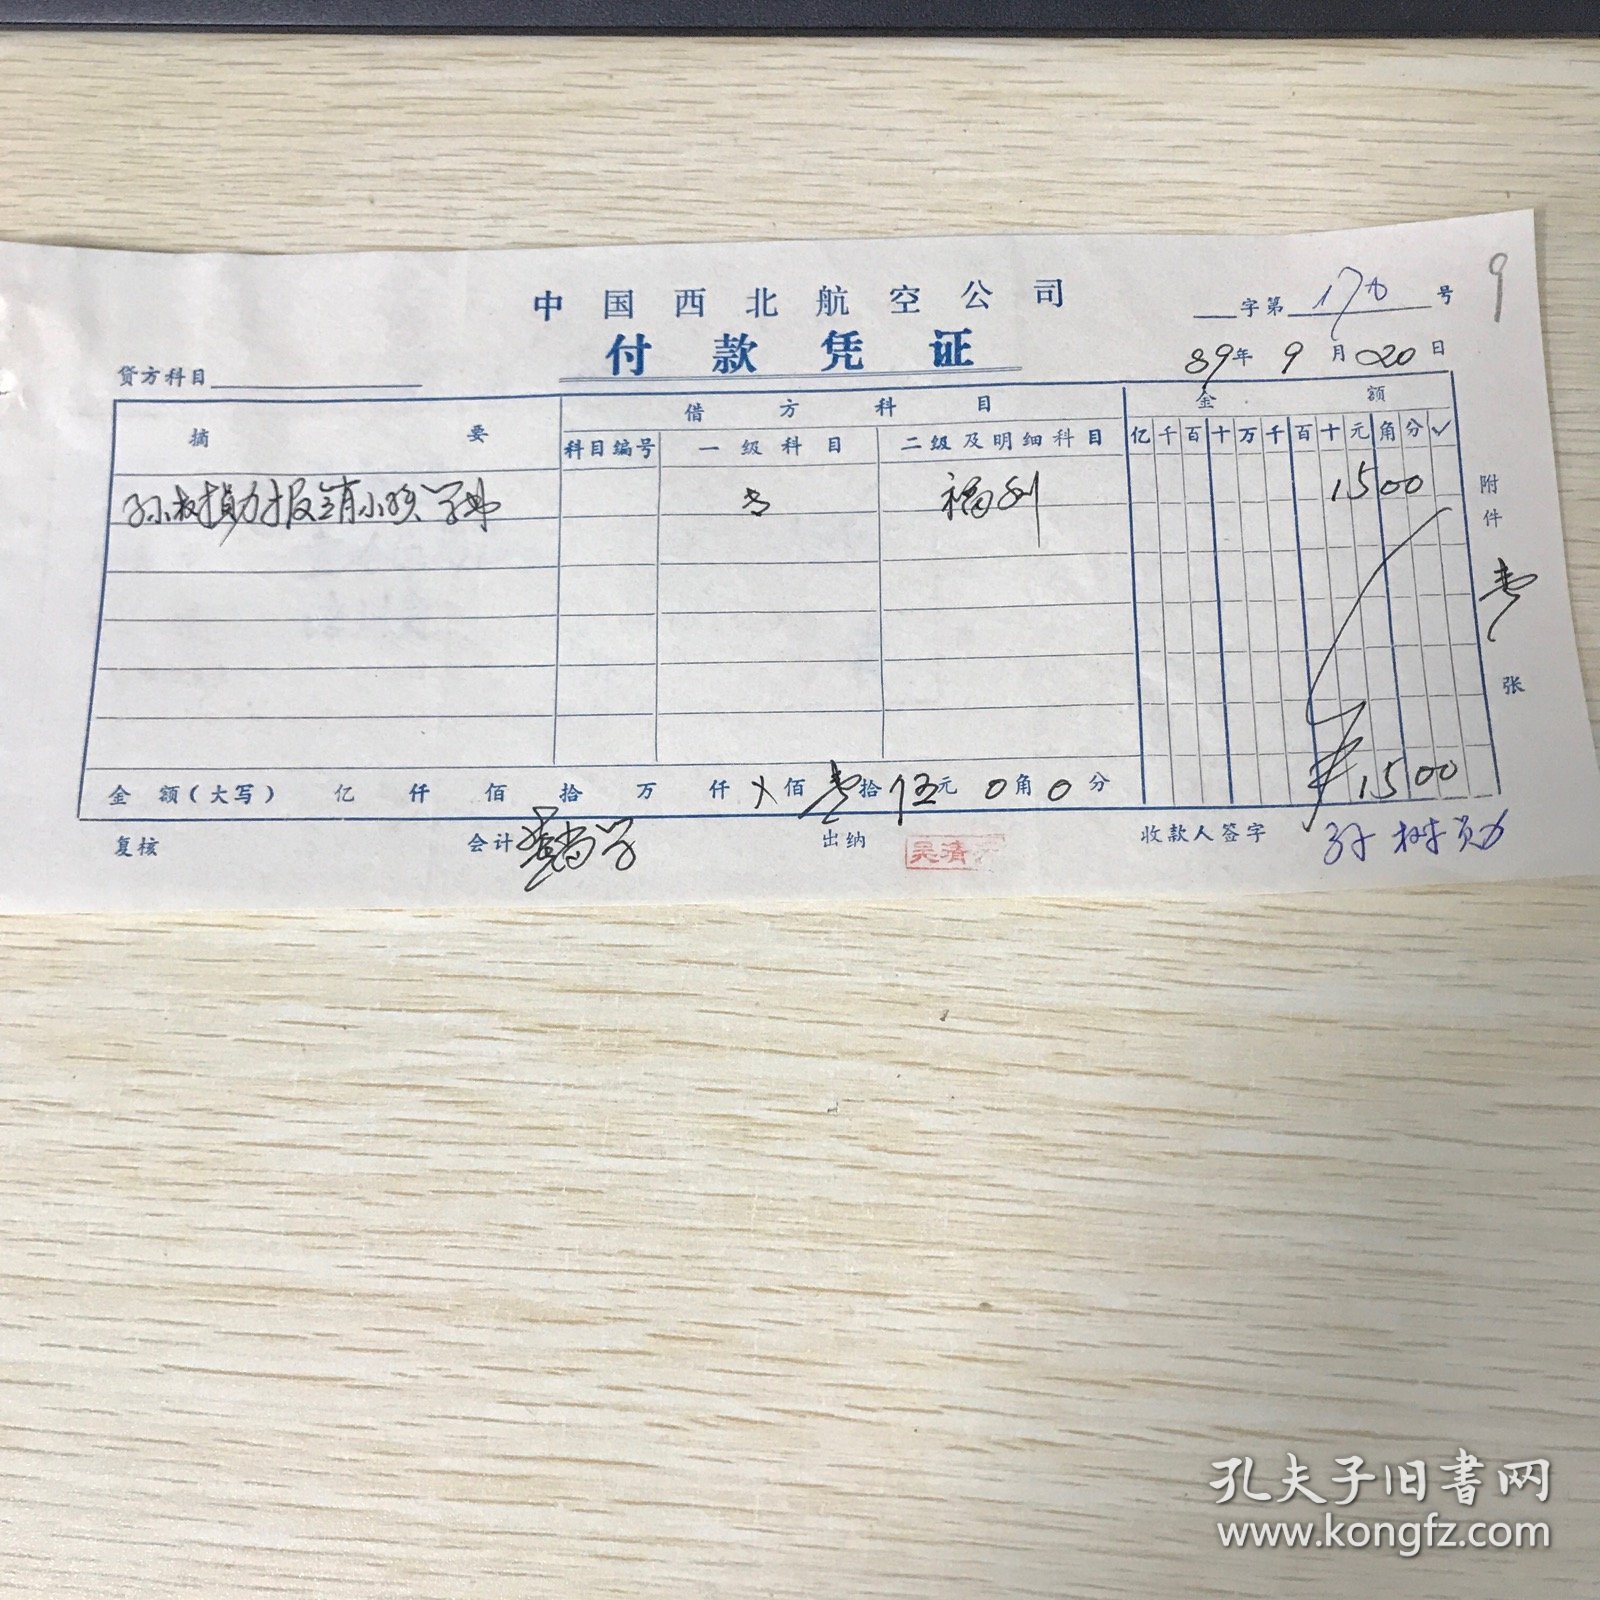 1989年，西北航空公司付款凭证一个，甘肃省第二汽车修理厂收据一个，编号9